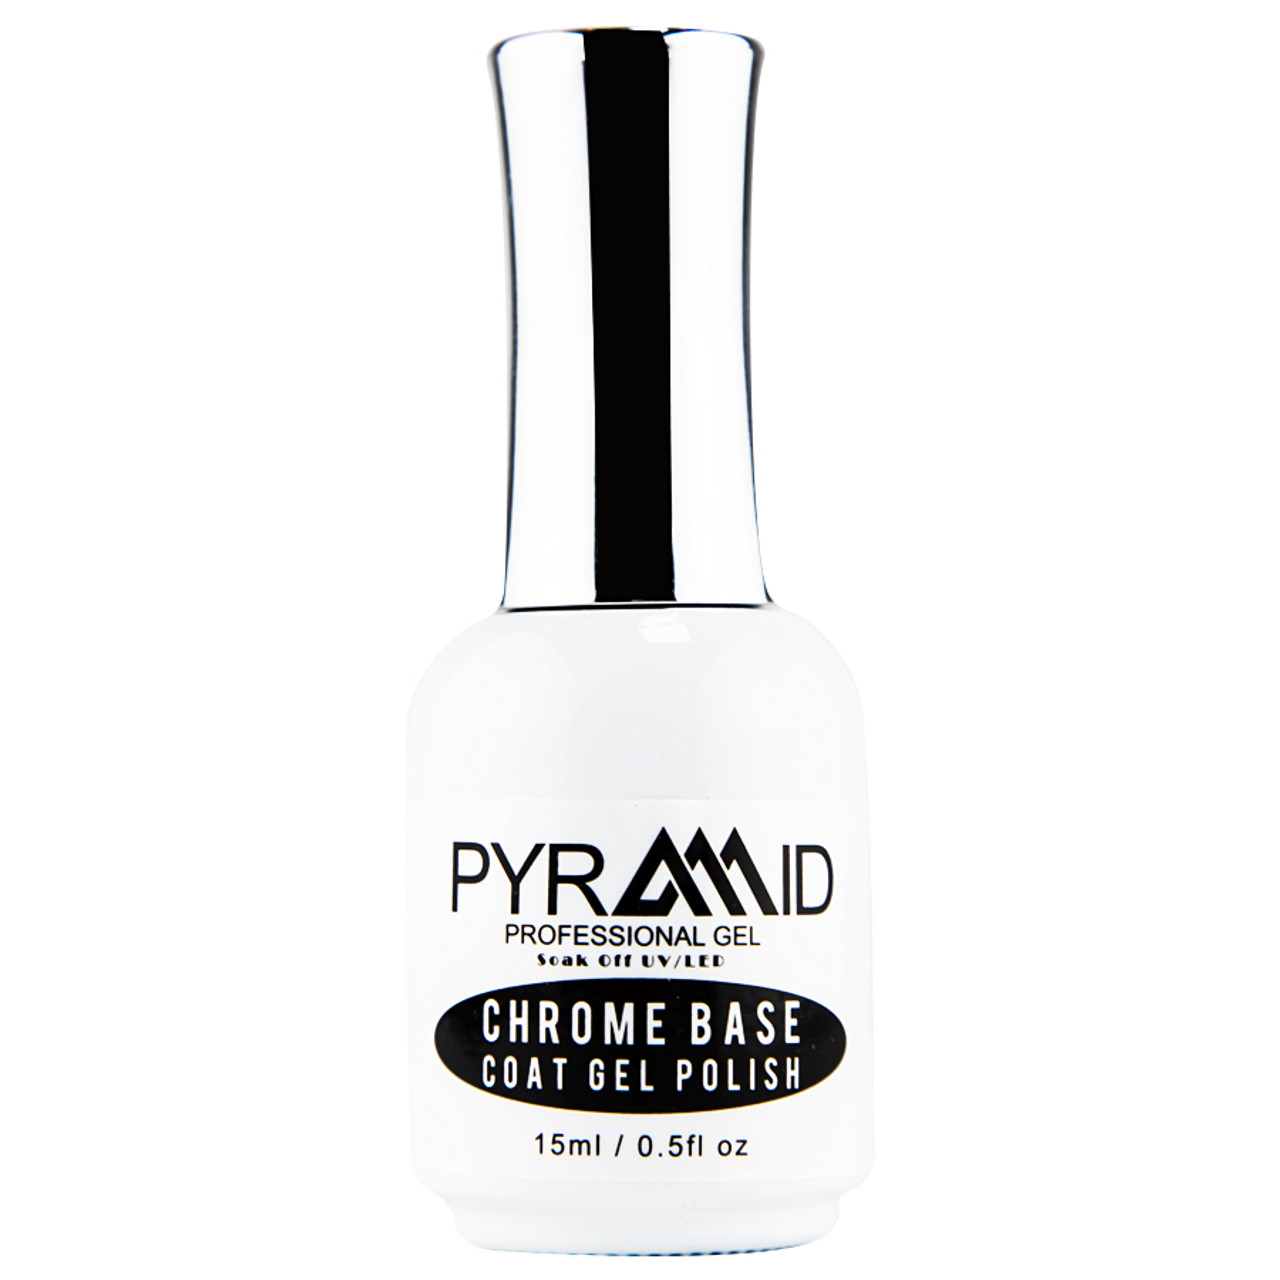 Pyramid Chrome Base Coat Gel Polish